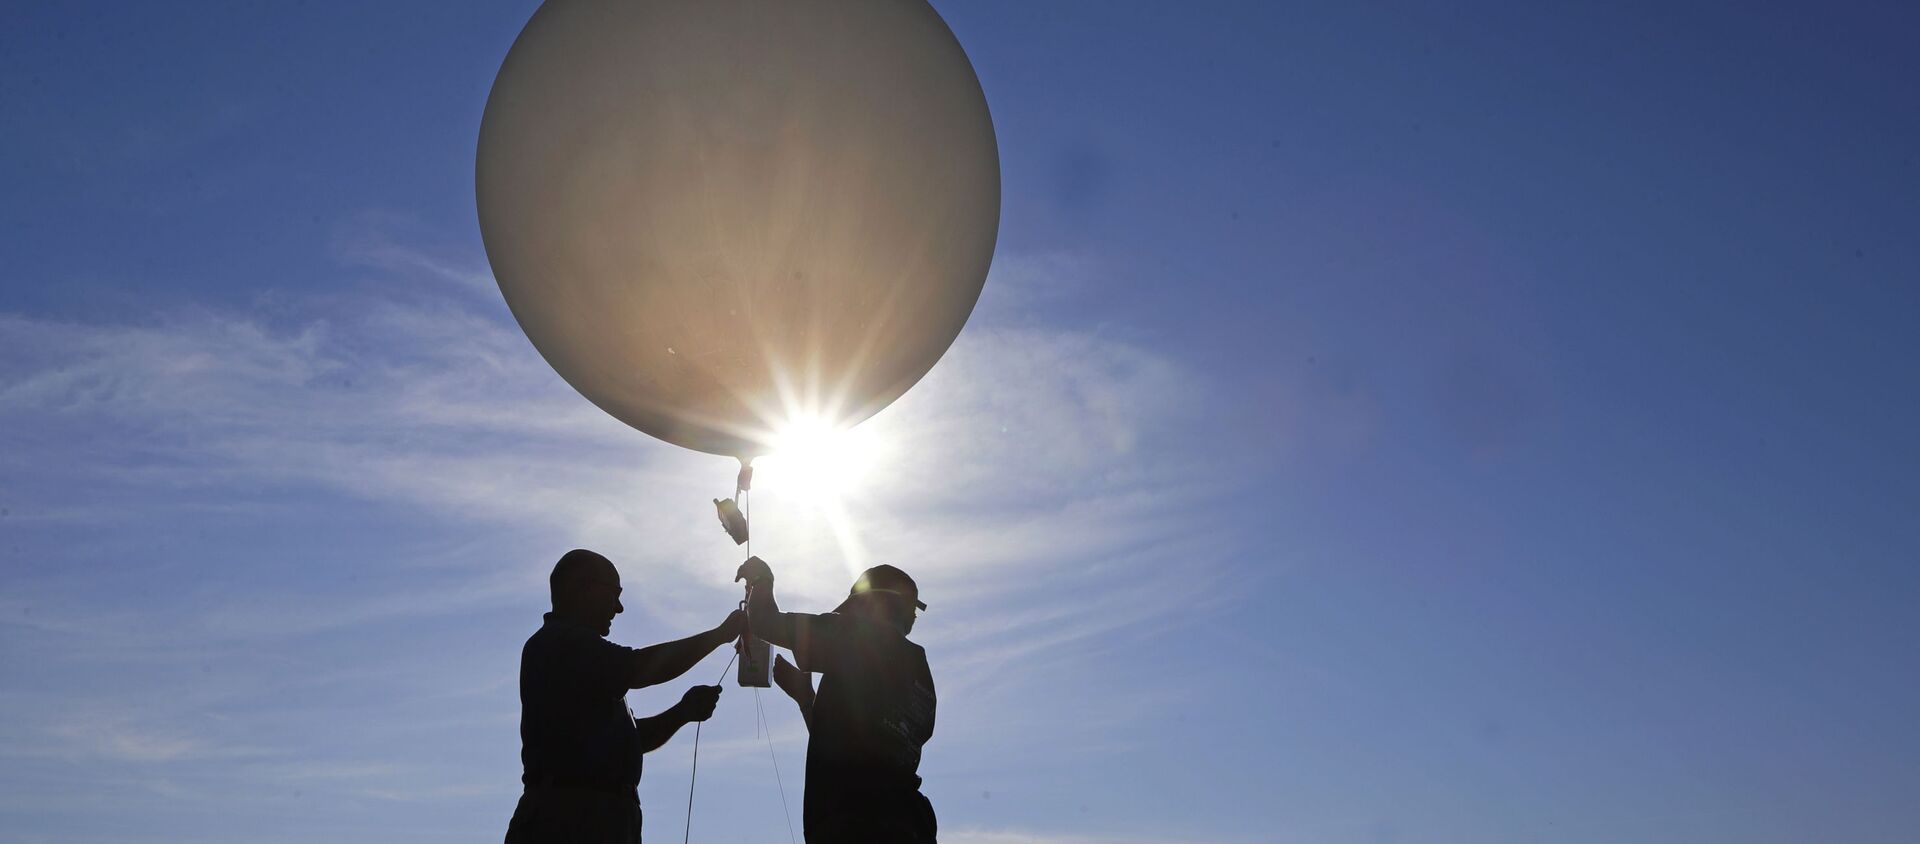 Unas personas lanzan un globo meteorológico (imagen referencial) - Sputnik Mundo, 1920, 05.02.2021